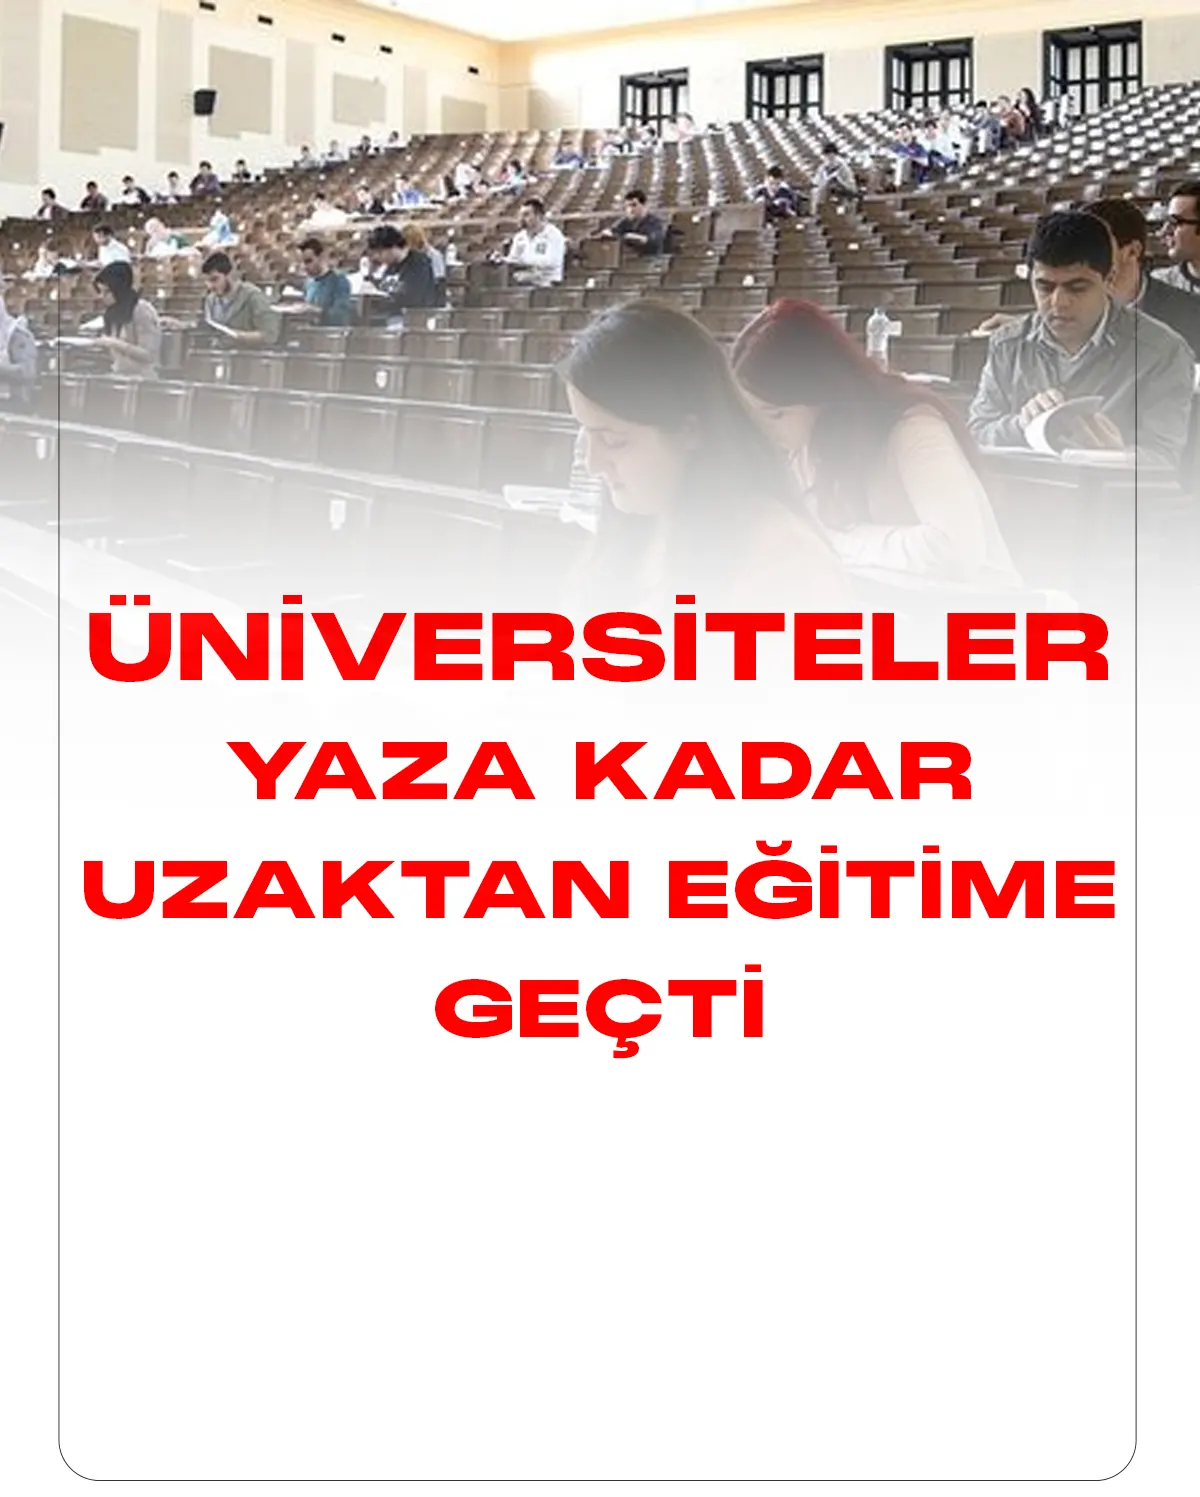 Üniversiteler Yaza Kadar Uzaktan Eğitime Geçti.Cumhurbaşkanı Erdoğan Diyarbakır'daki çadır kenti ziyarette bulunurken, üniversitelerle ilgili son dakika açıklamalarında bulundu.